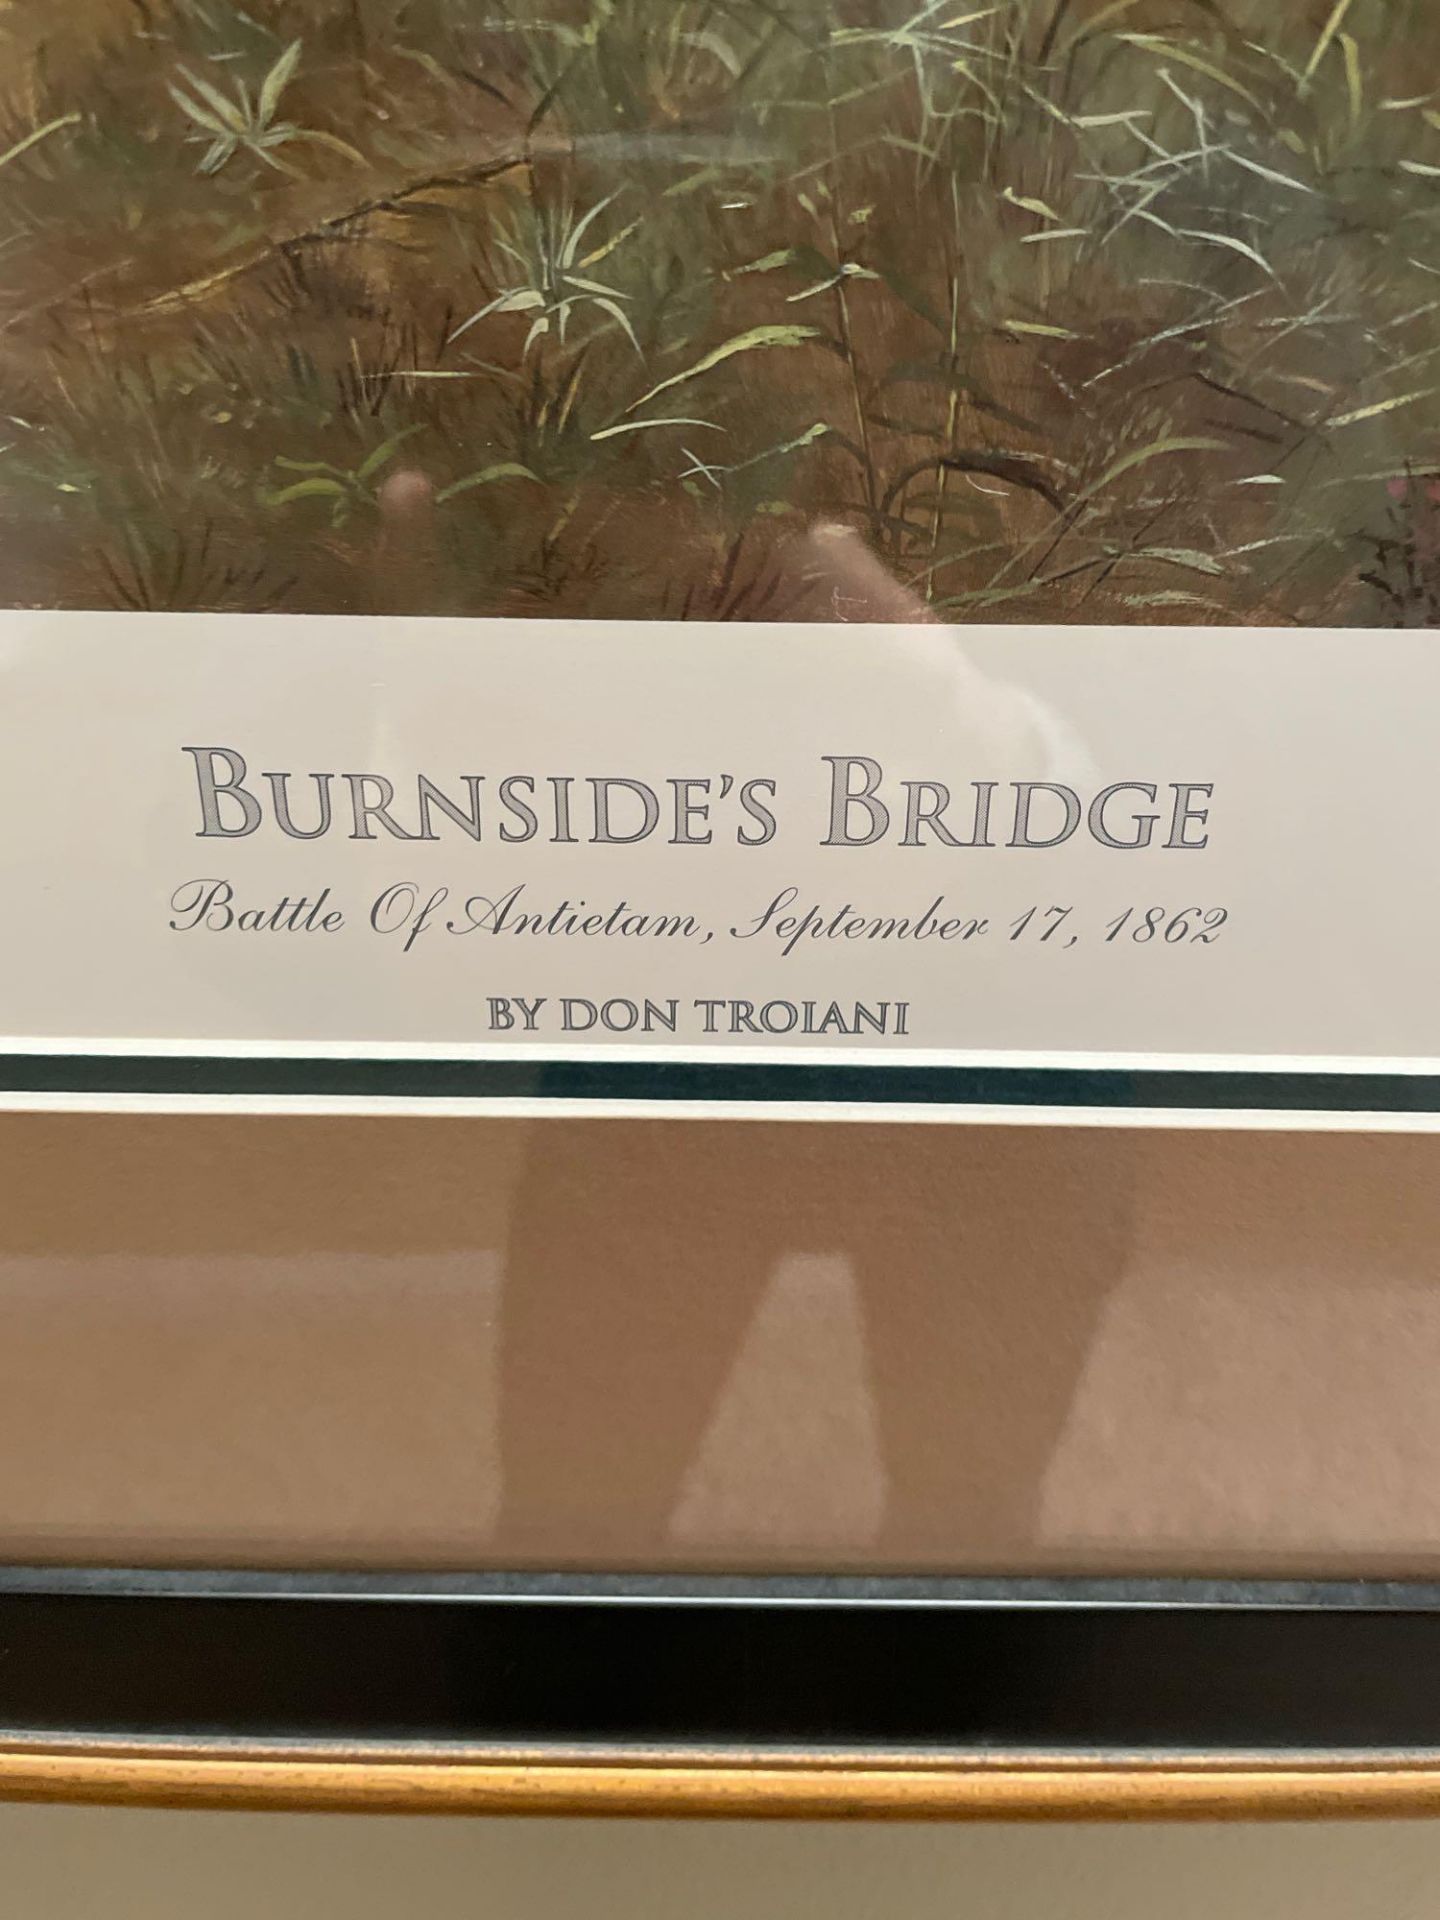 burnside bridge Artwork, print framed under glass by Don Troiani 755/1500 - Image 2 of 4